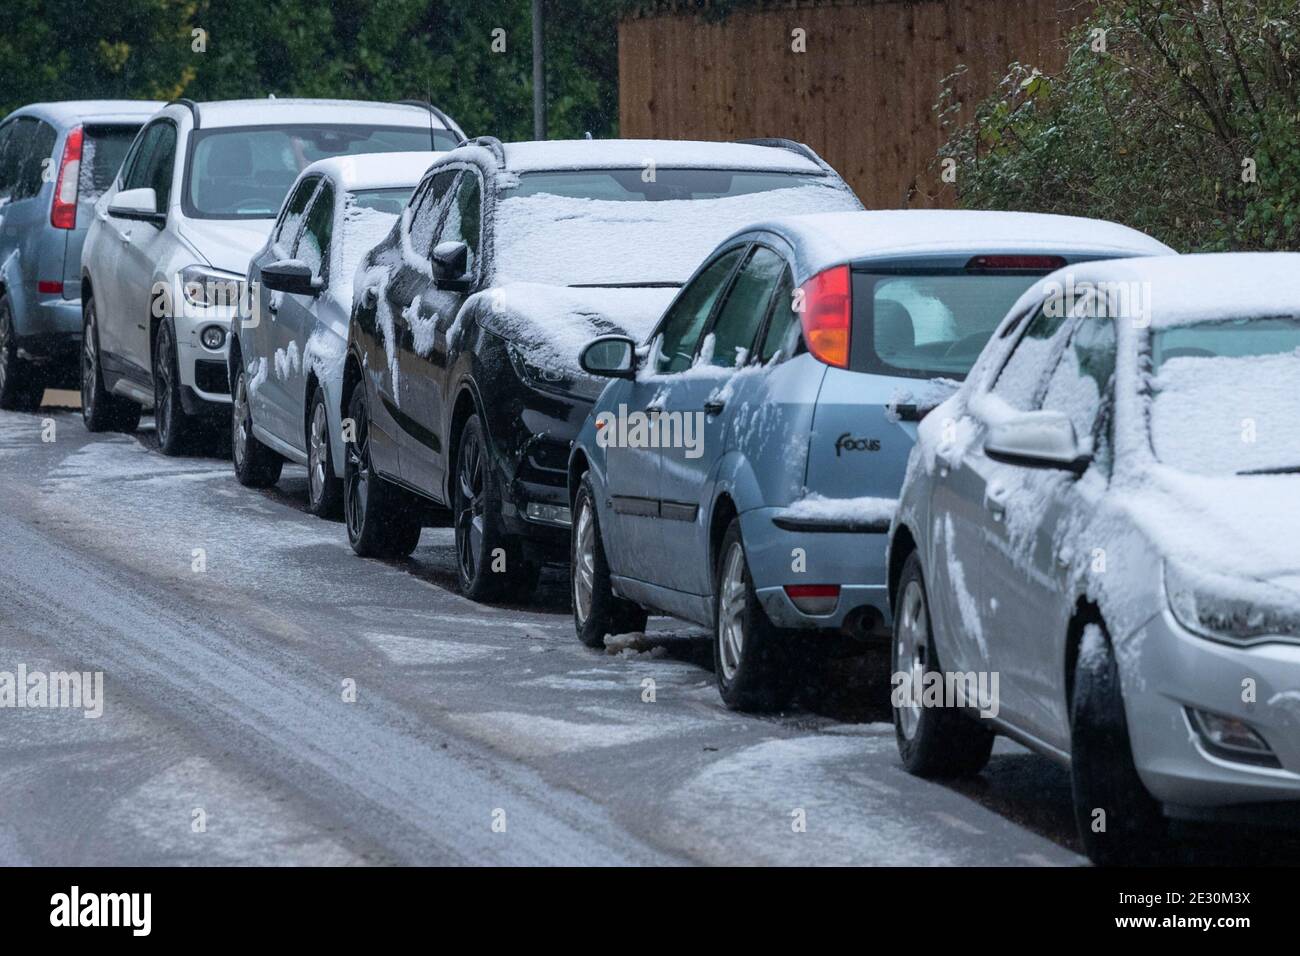 Brentwood Essex 16. Januar 2021 WETTER leichter Schnee in Brentwood Essex UK geparkte Autos auf der städtischen Straße im Schnee, Credit: Ian Davidson/Alamy Live News Stockfoto